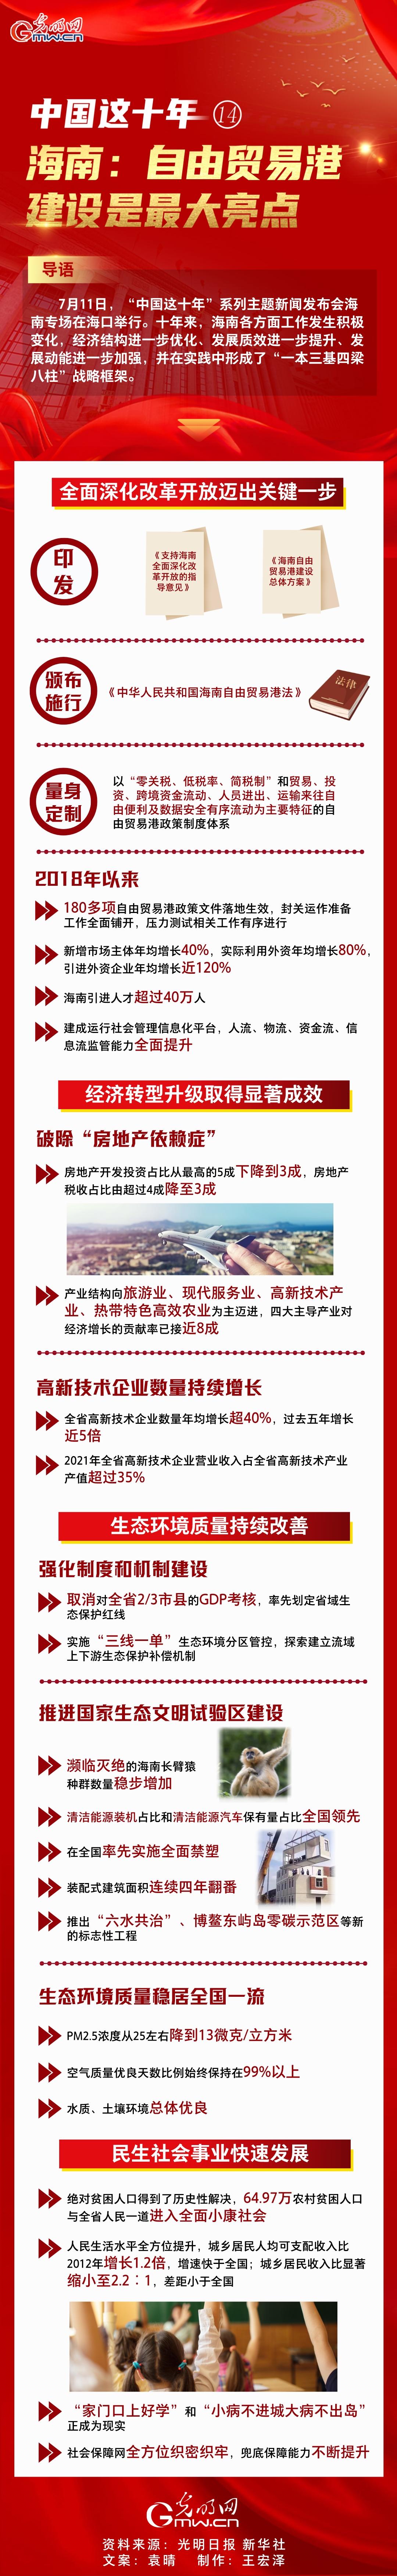 【中国这十年⑭】一图速览 海南：自由贸易港建设是最大亮点